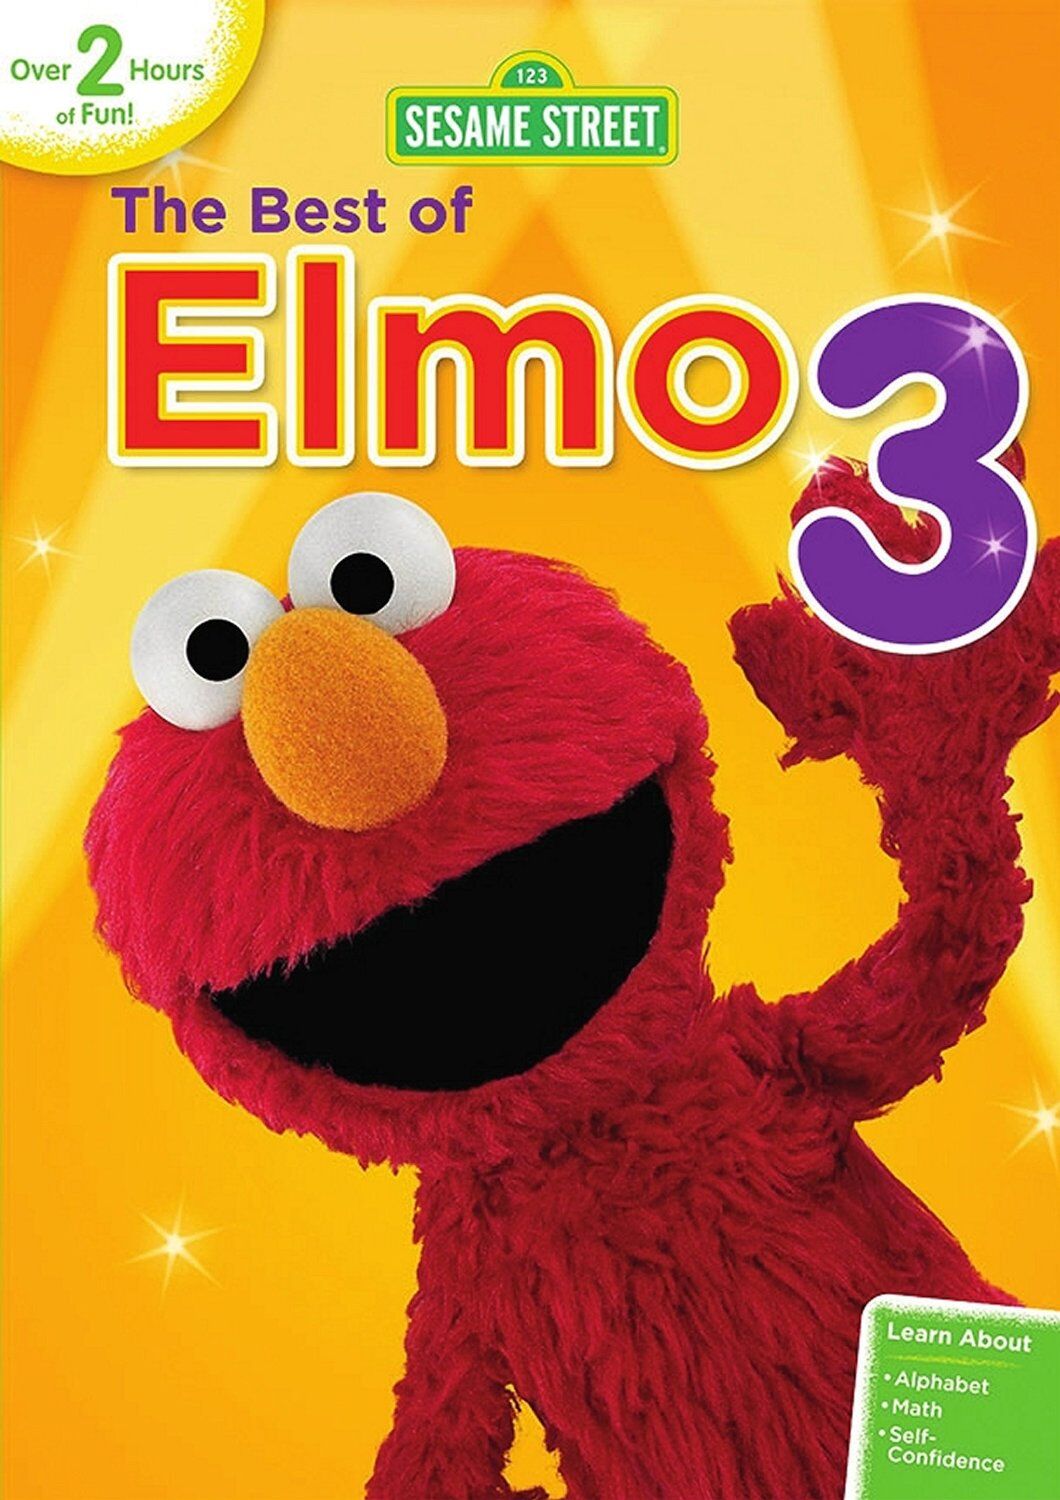 The Best Of Elmo 3 Muppet Wiki Fandom